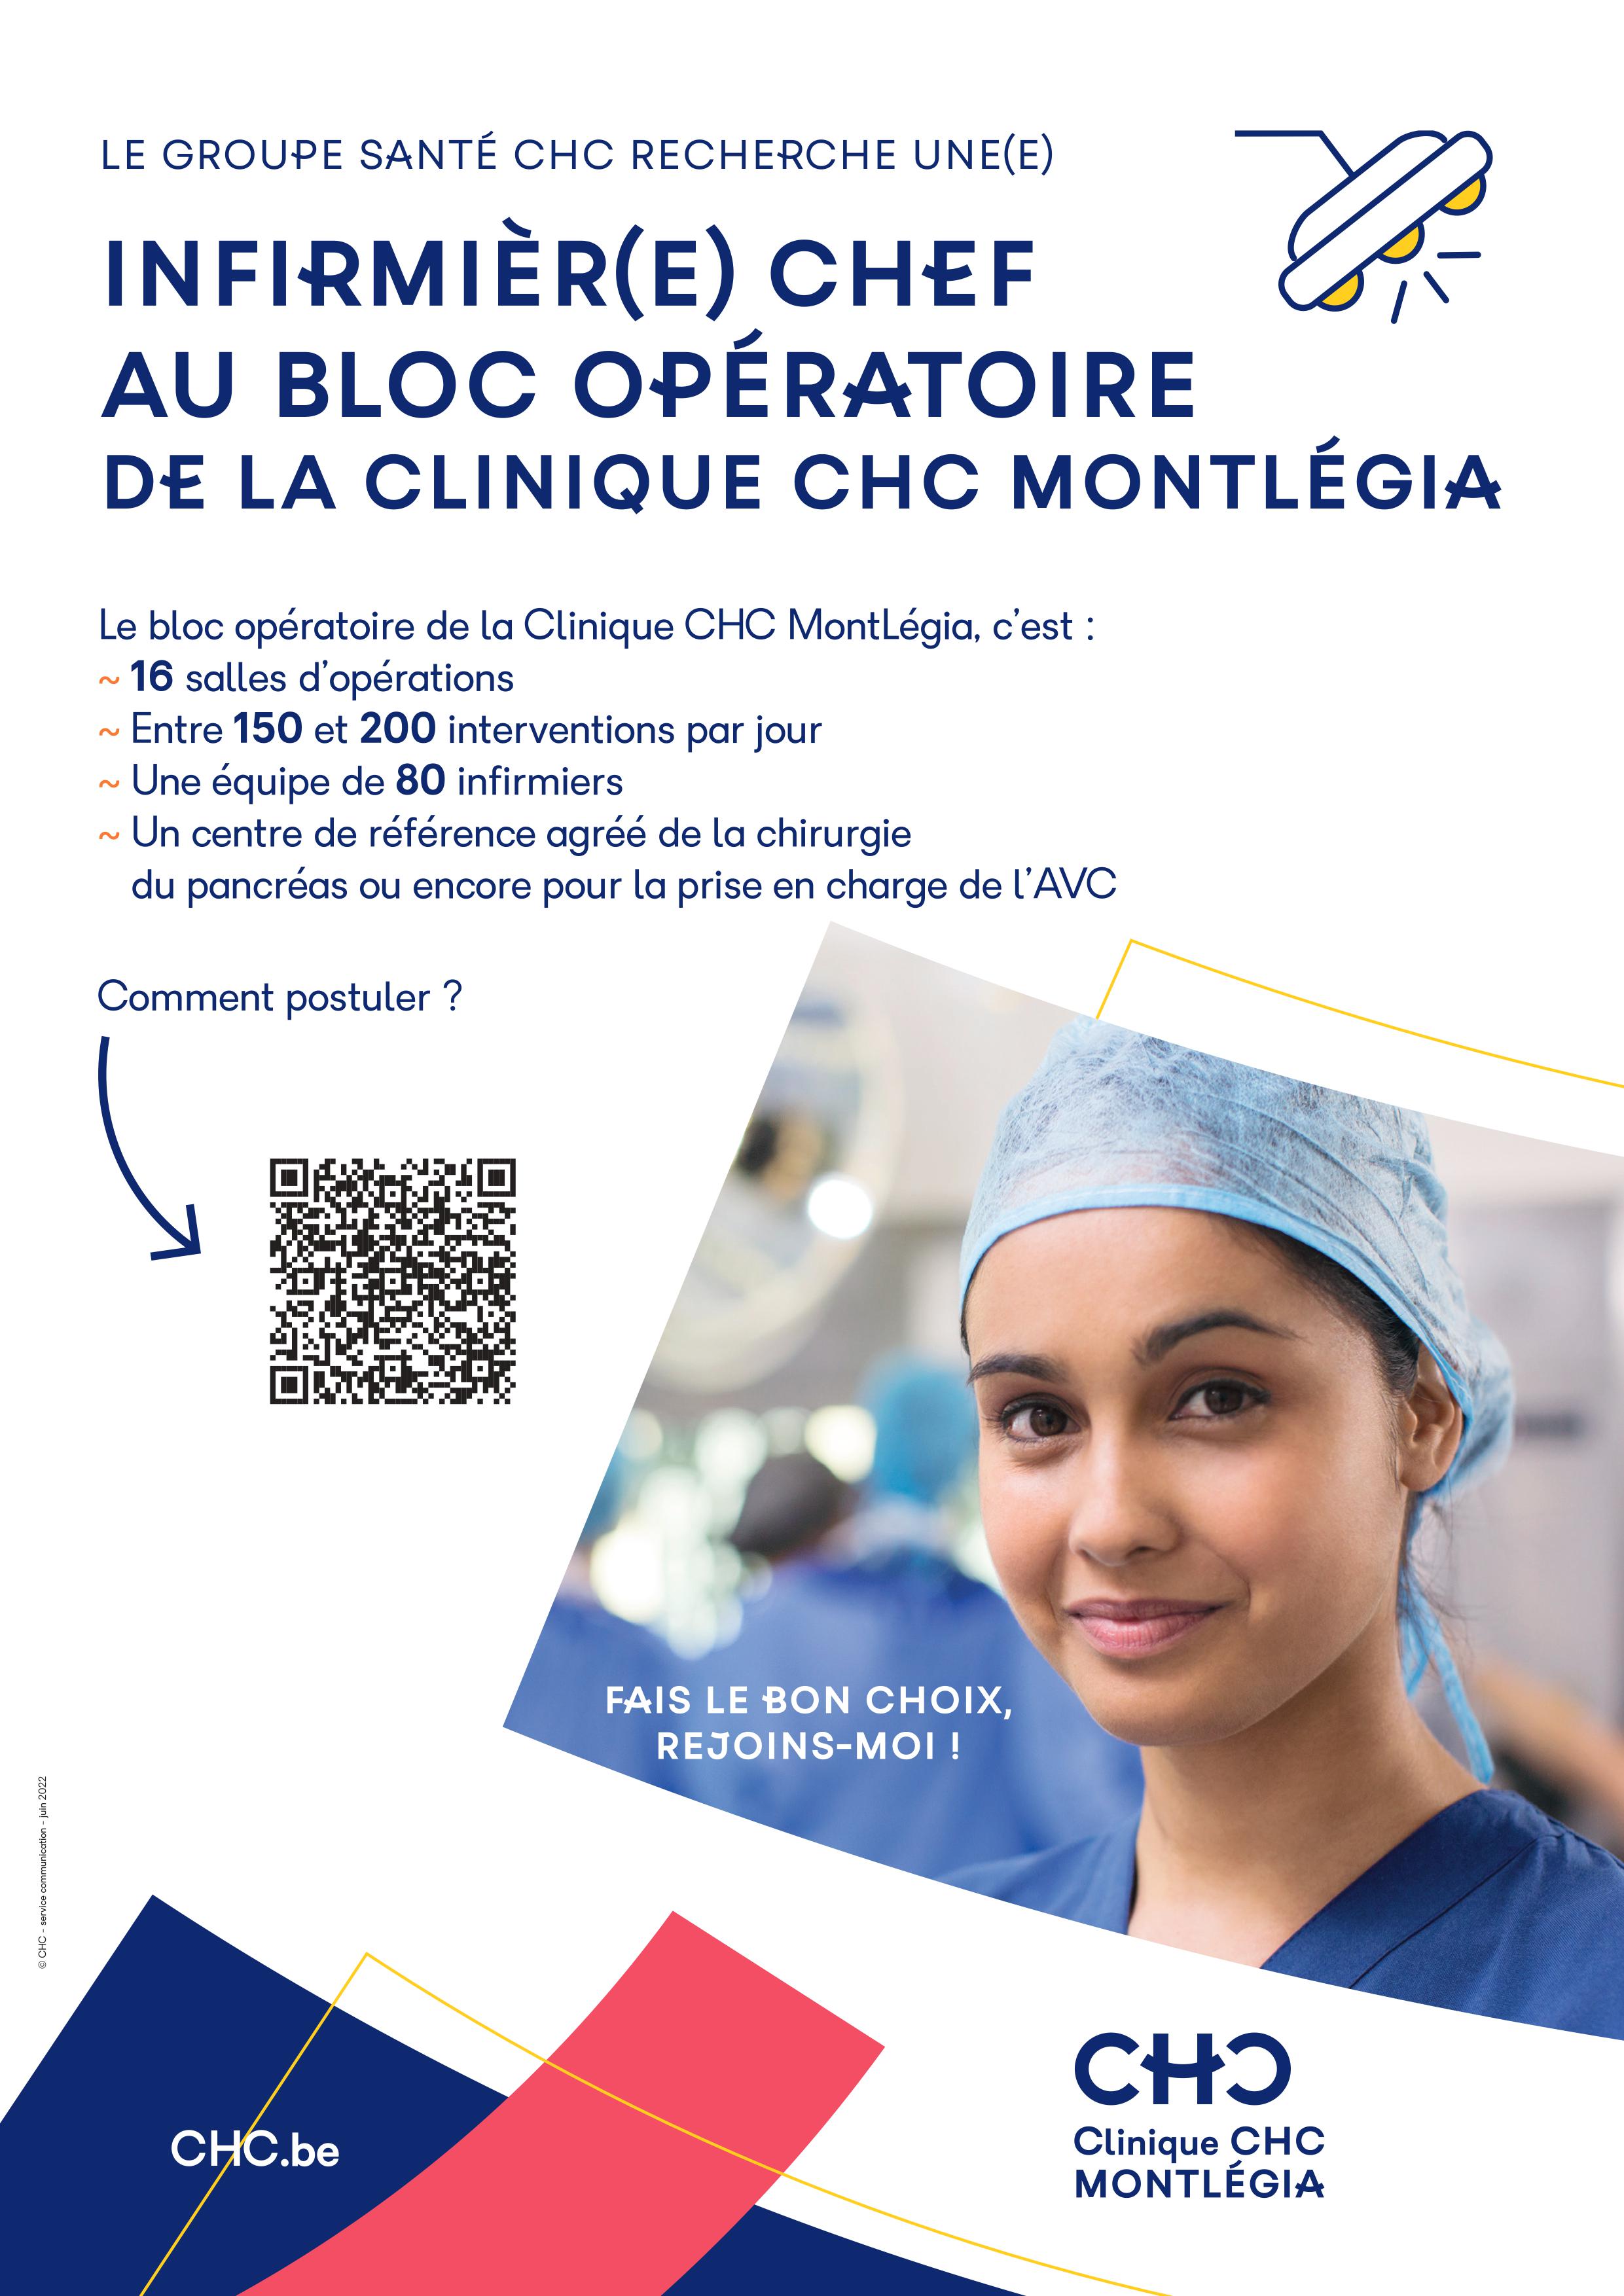 Le  Groupe Santé CHC recherche un(e) infirmièr(e) chef au bloc opératoire de la Clinique CHC Montlégia